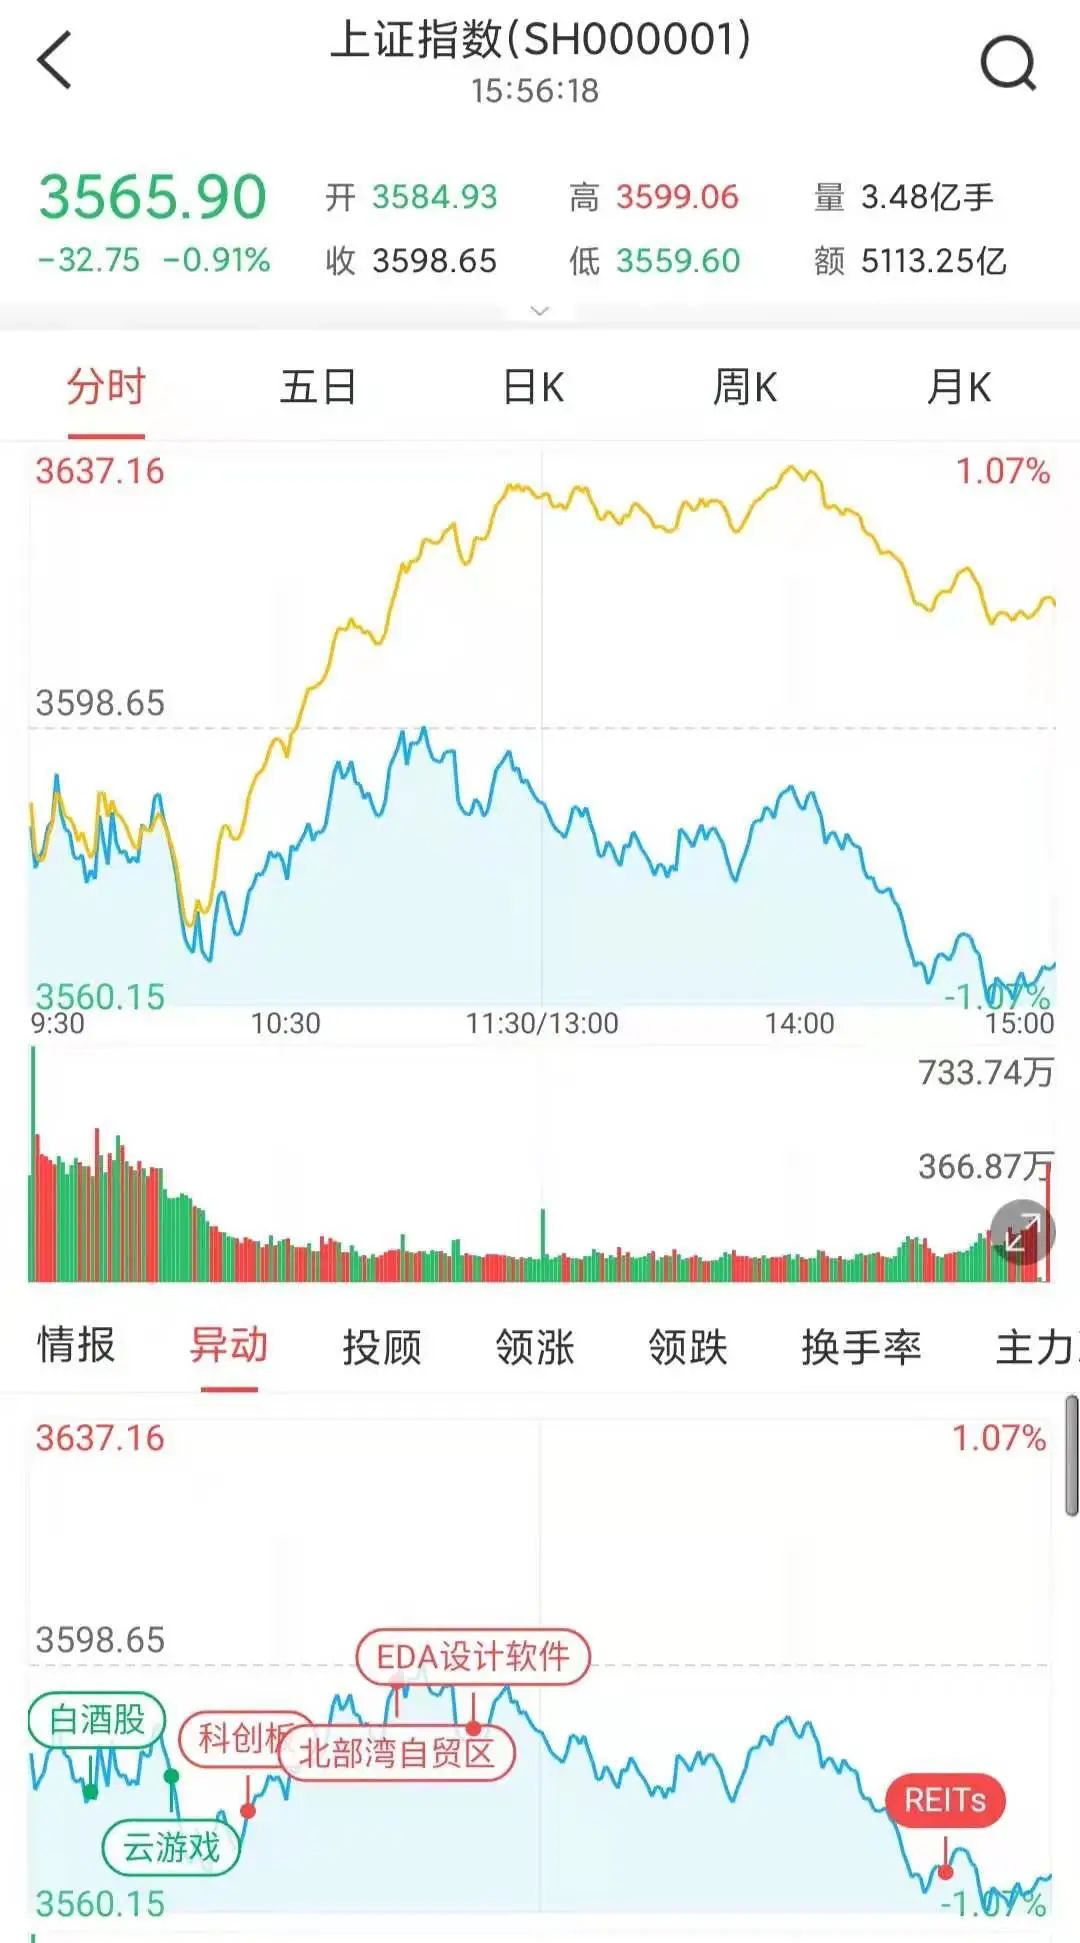 什么情况？跌停板上都是“熟人” 新晋中国首富辞职让这只股重挫逾9% 抱团股土崩瓦解还是假摔？